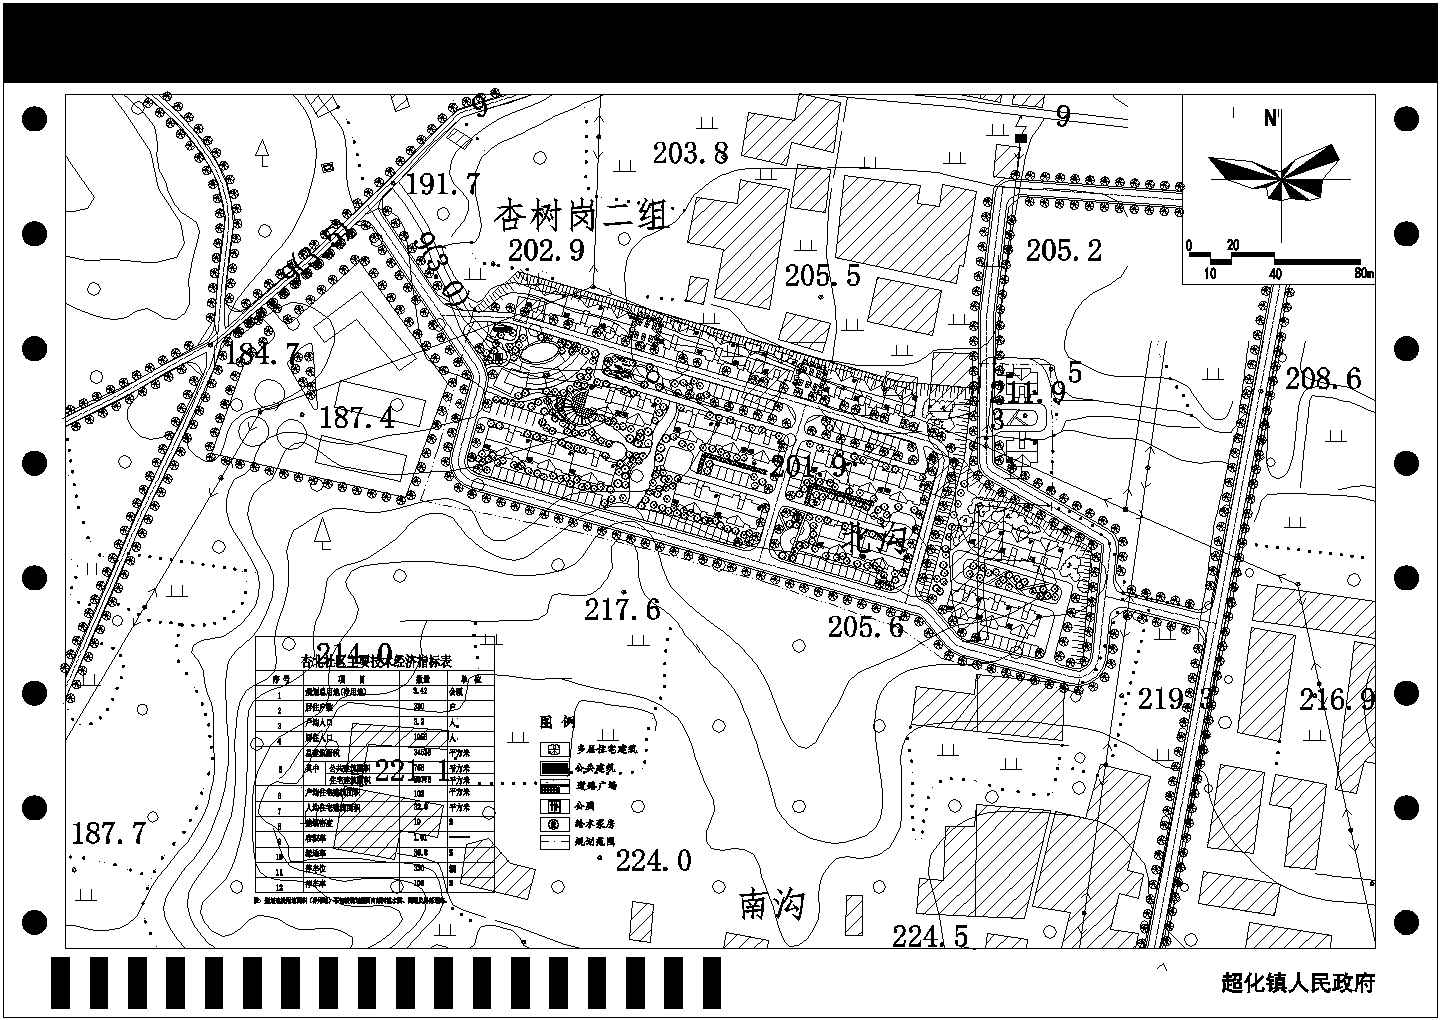 超化镇杏北社区空间发展规划与详细规划设计方案